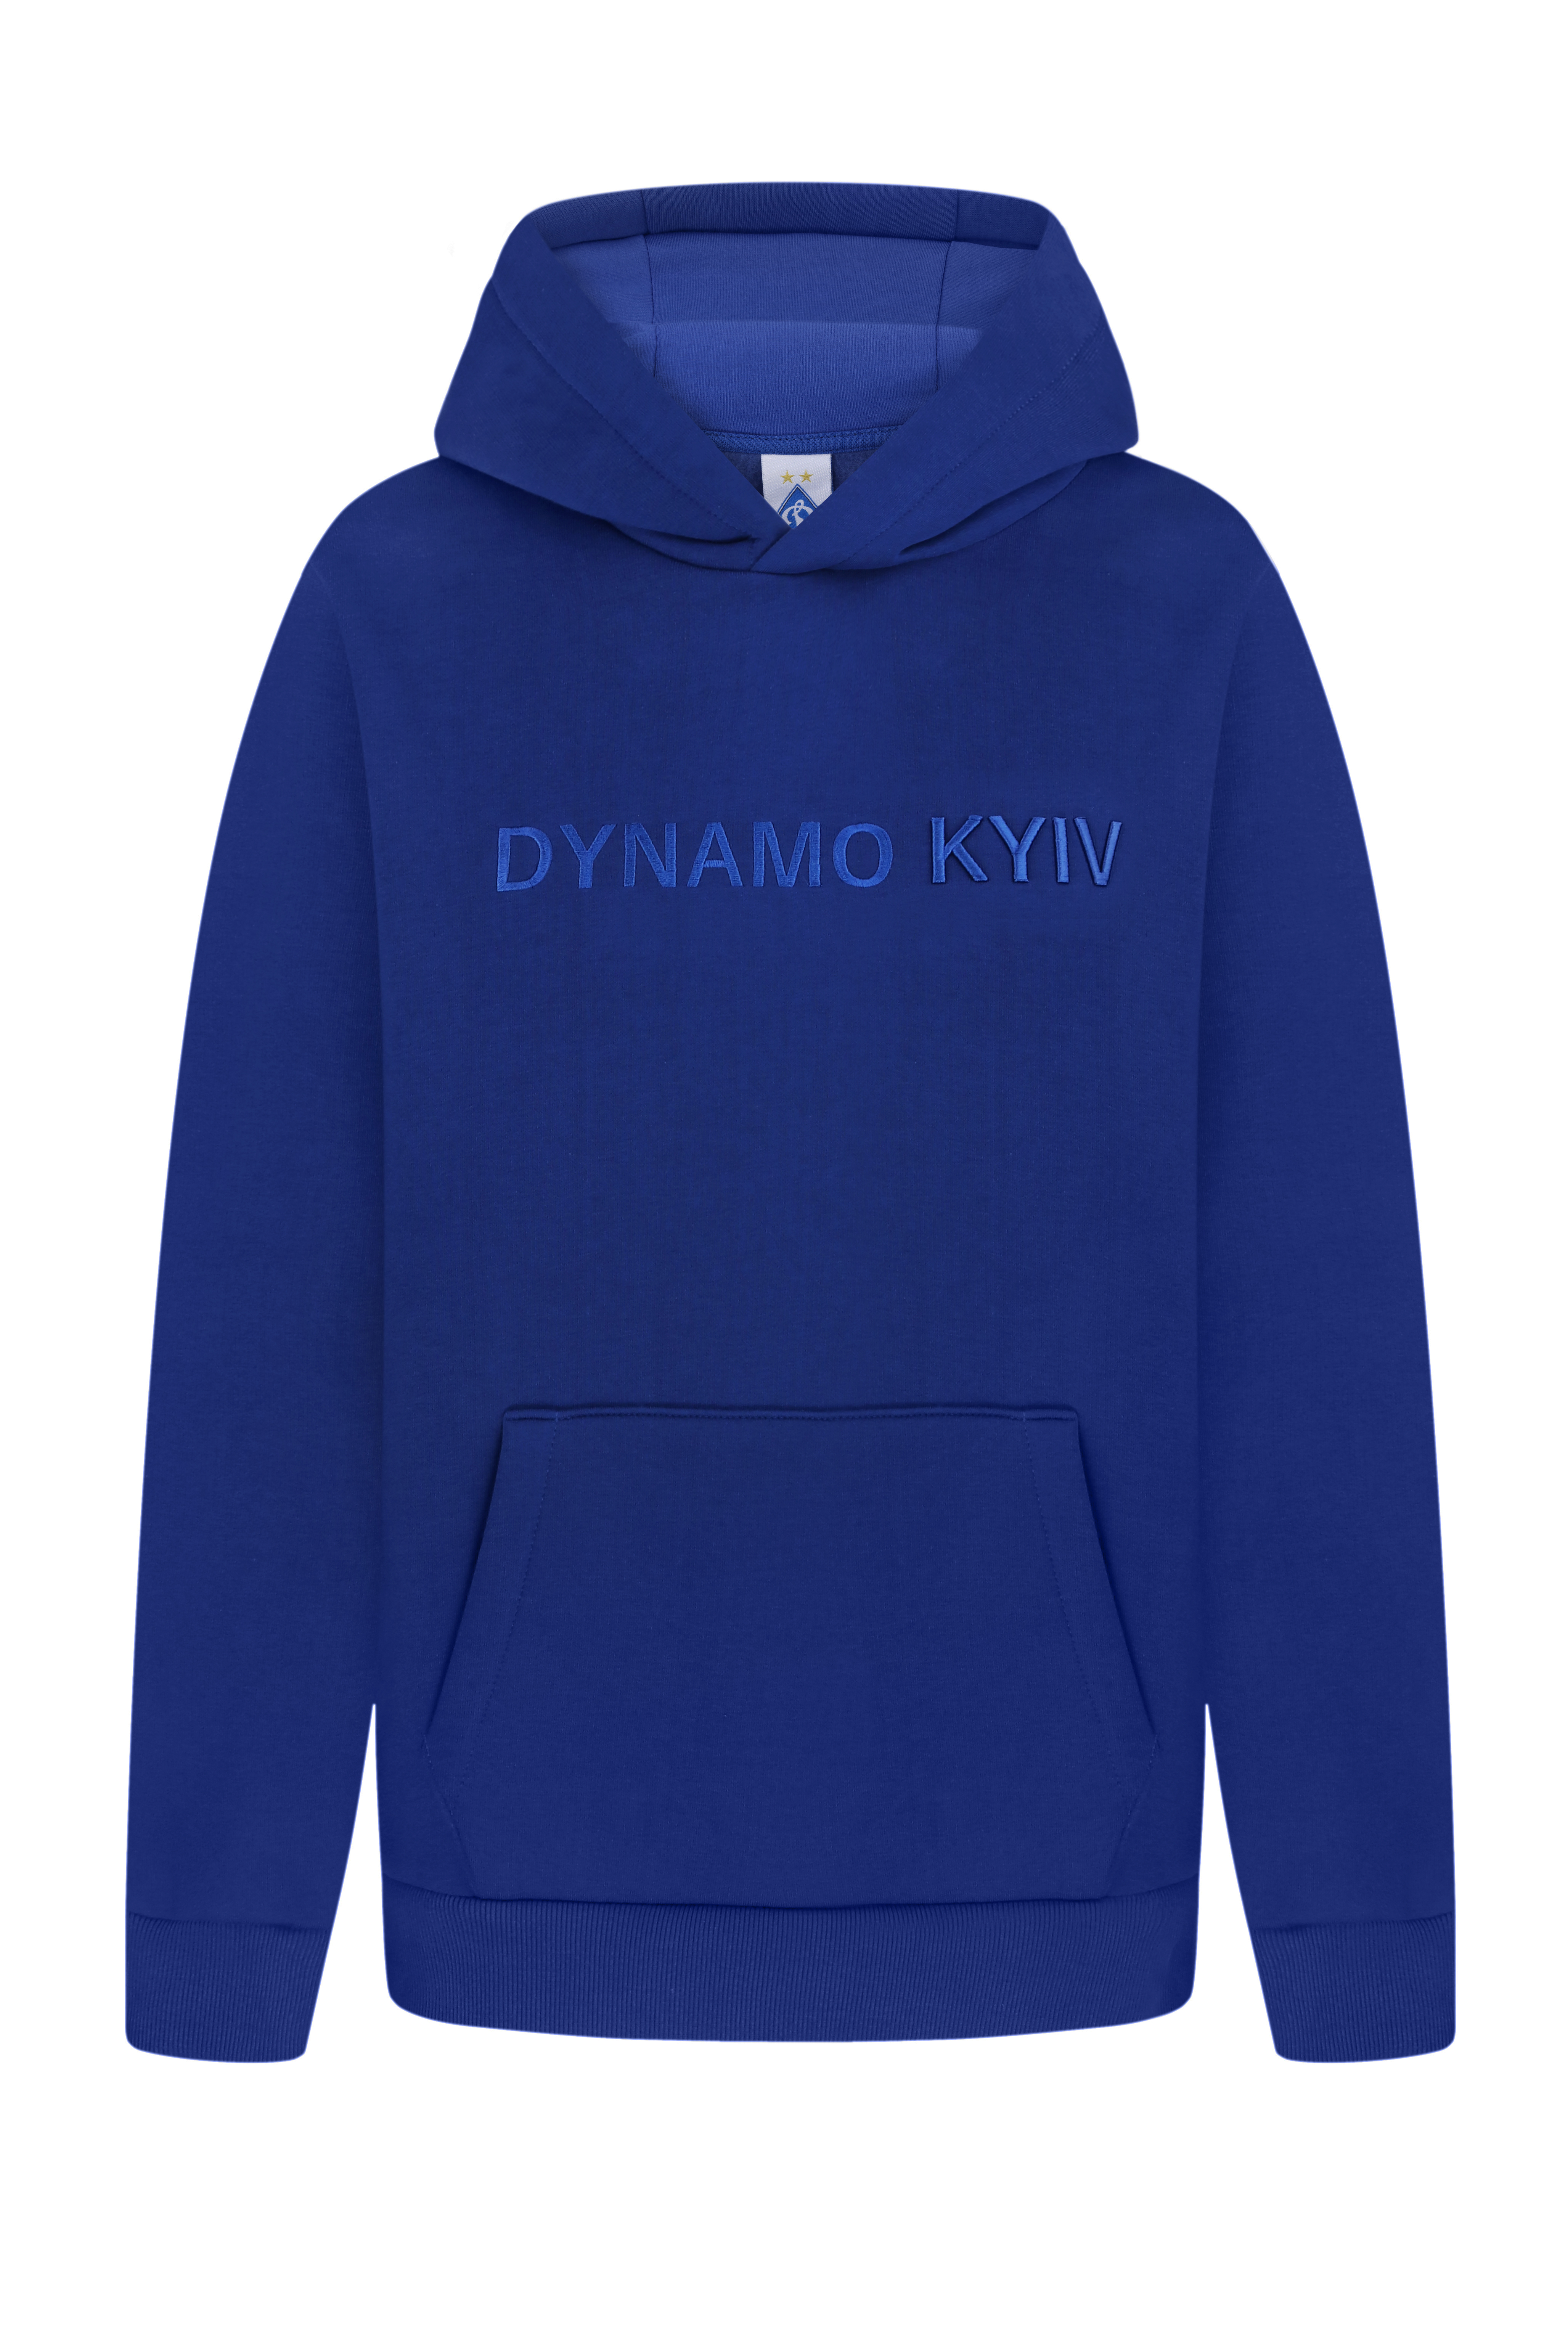 Blue hooded sweat "Dynamo Kyiv"